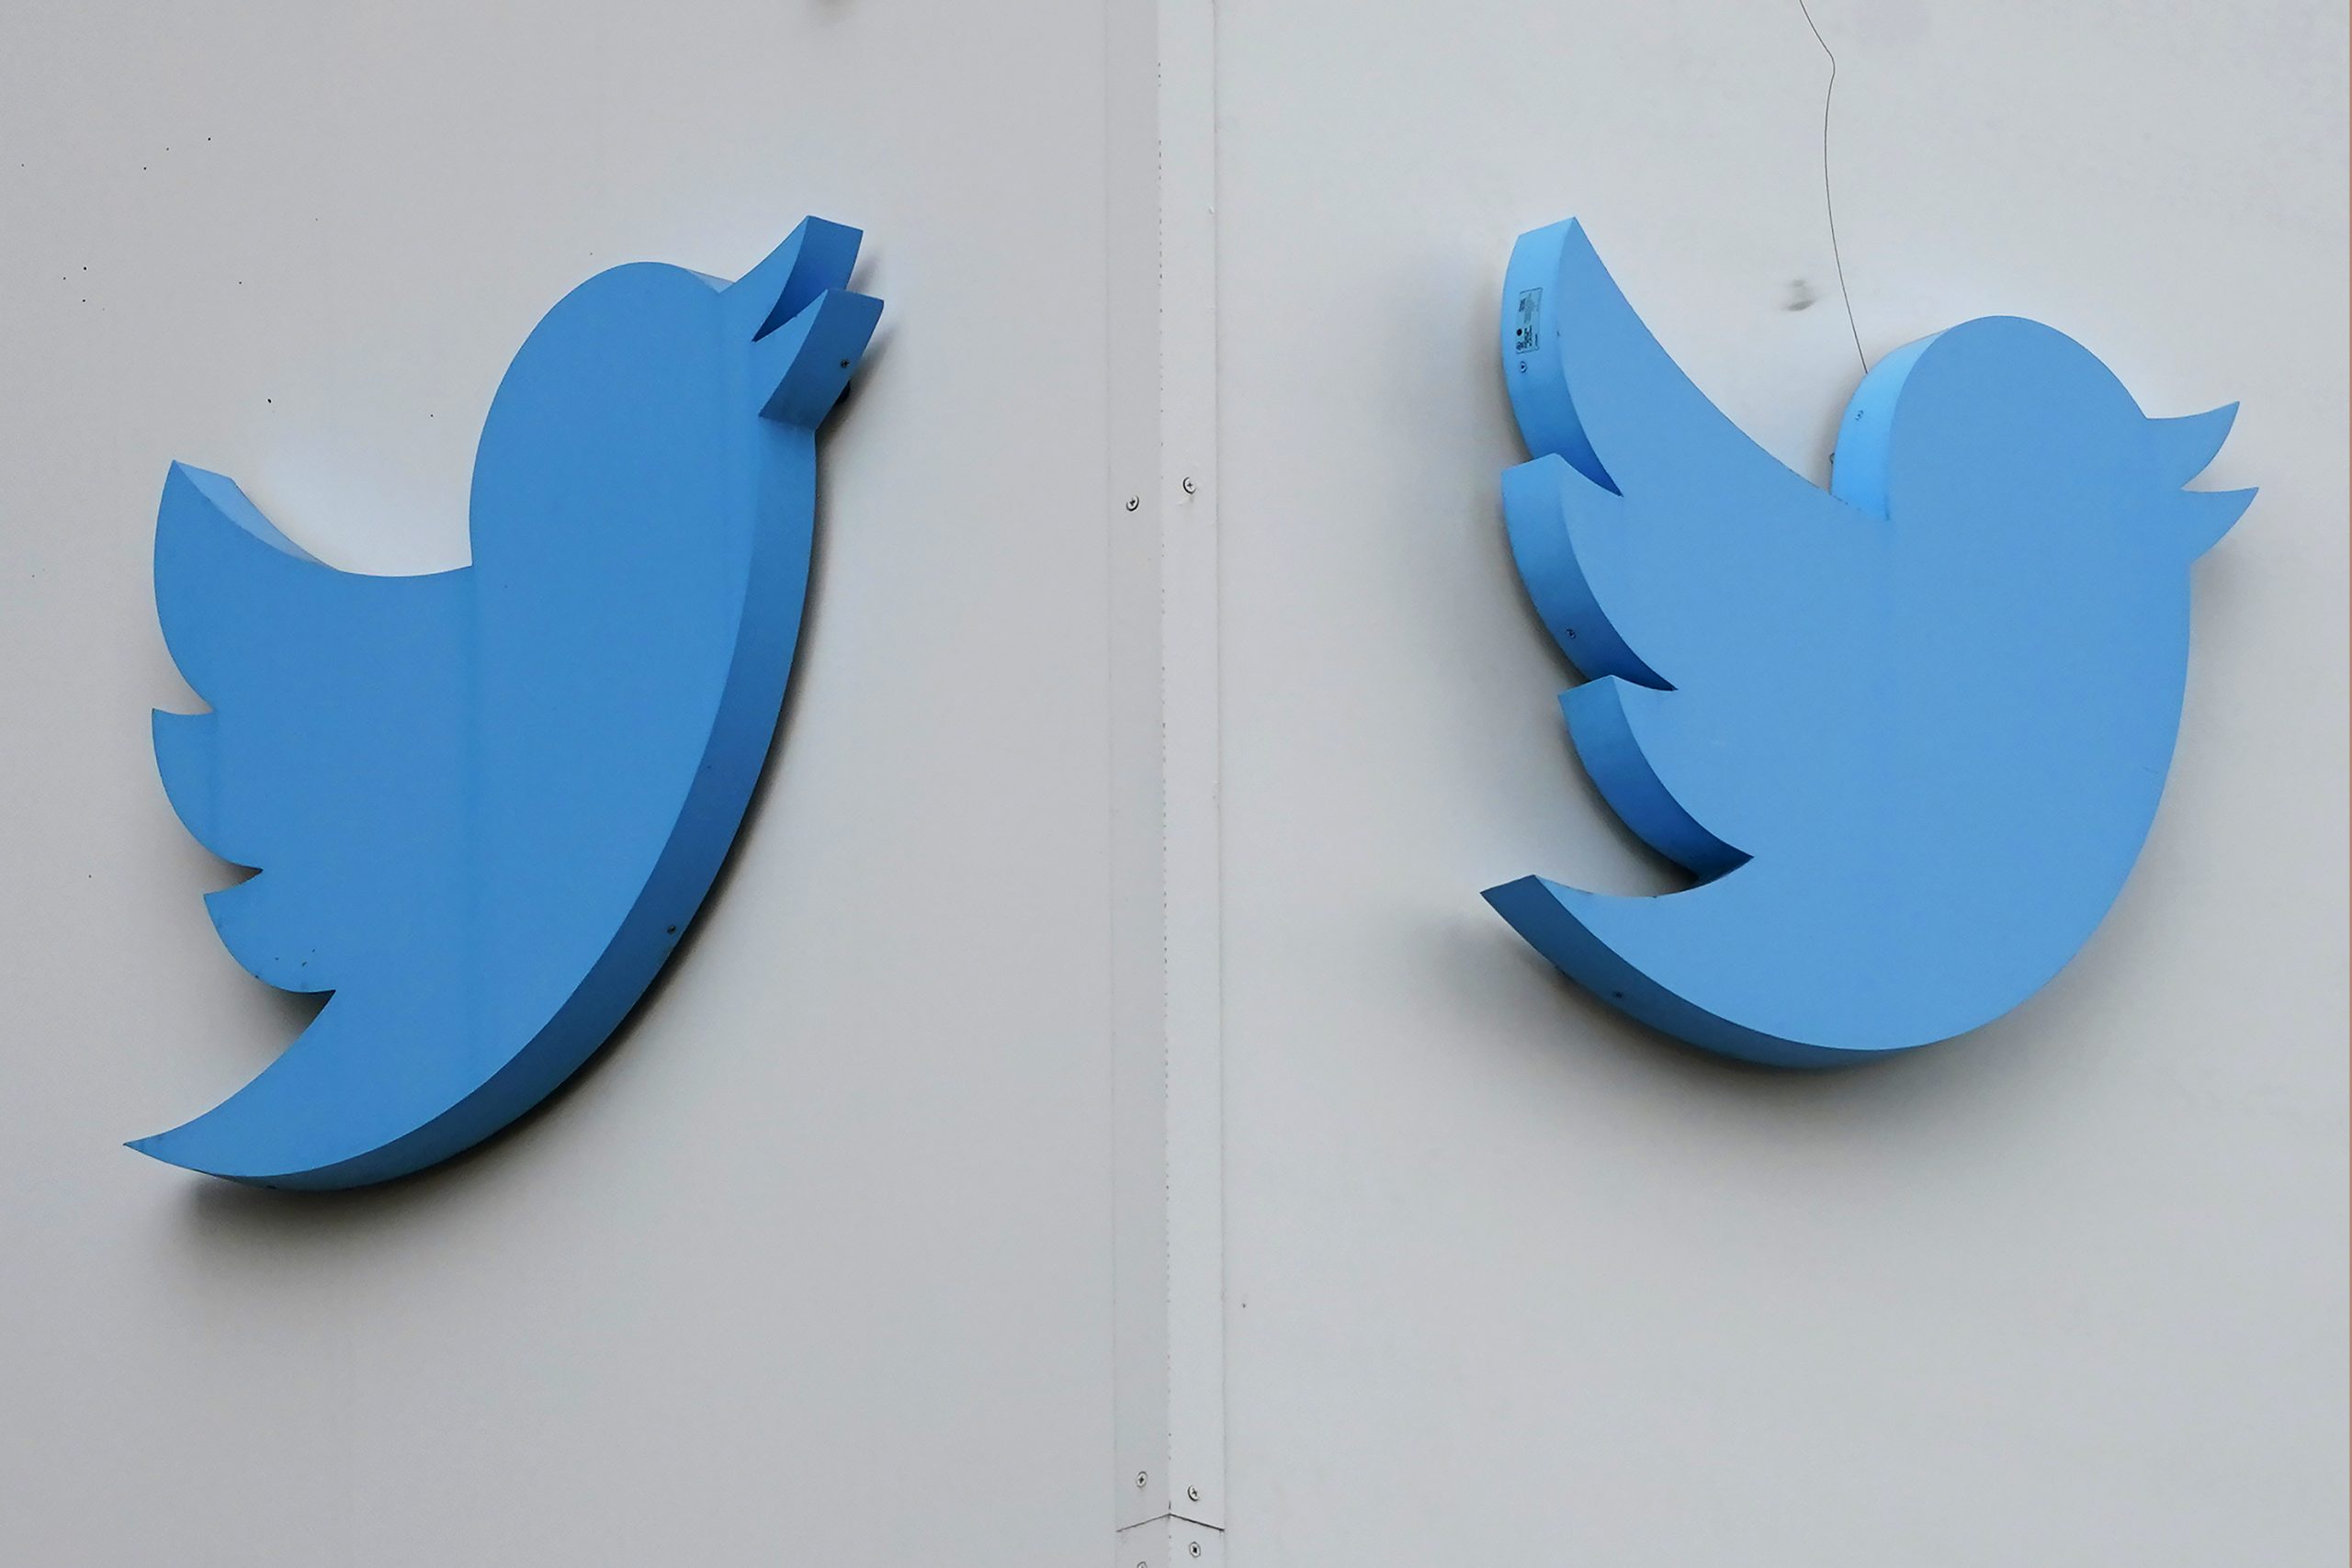 推特据报进一步削减审核全球内容的员工